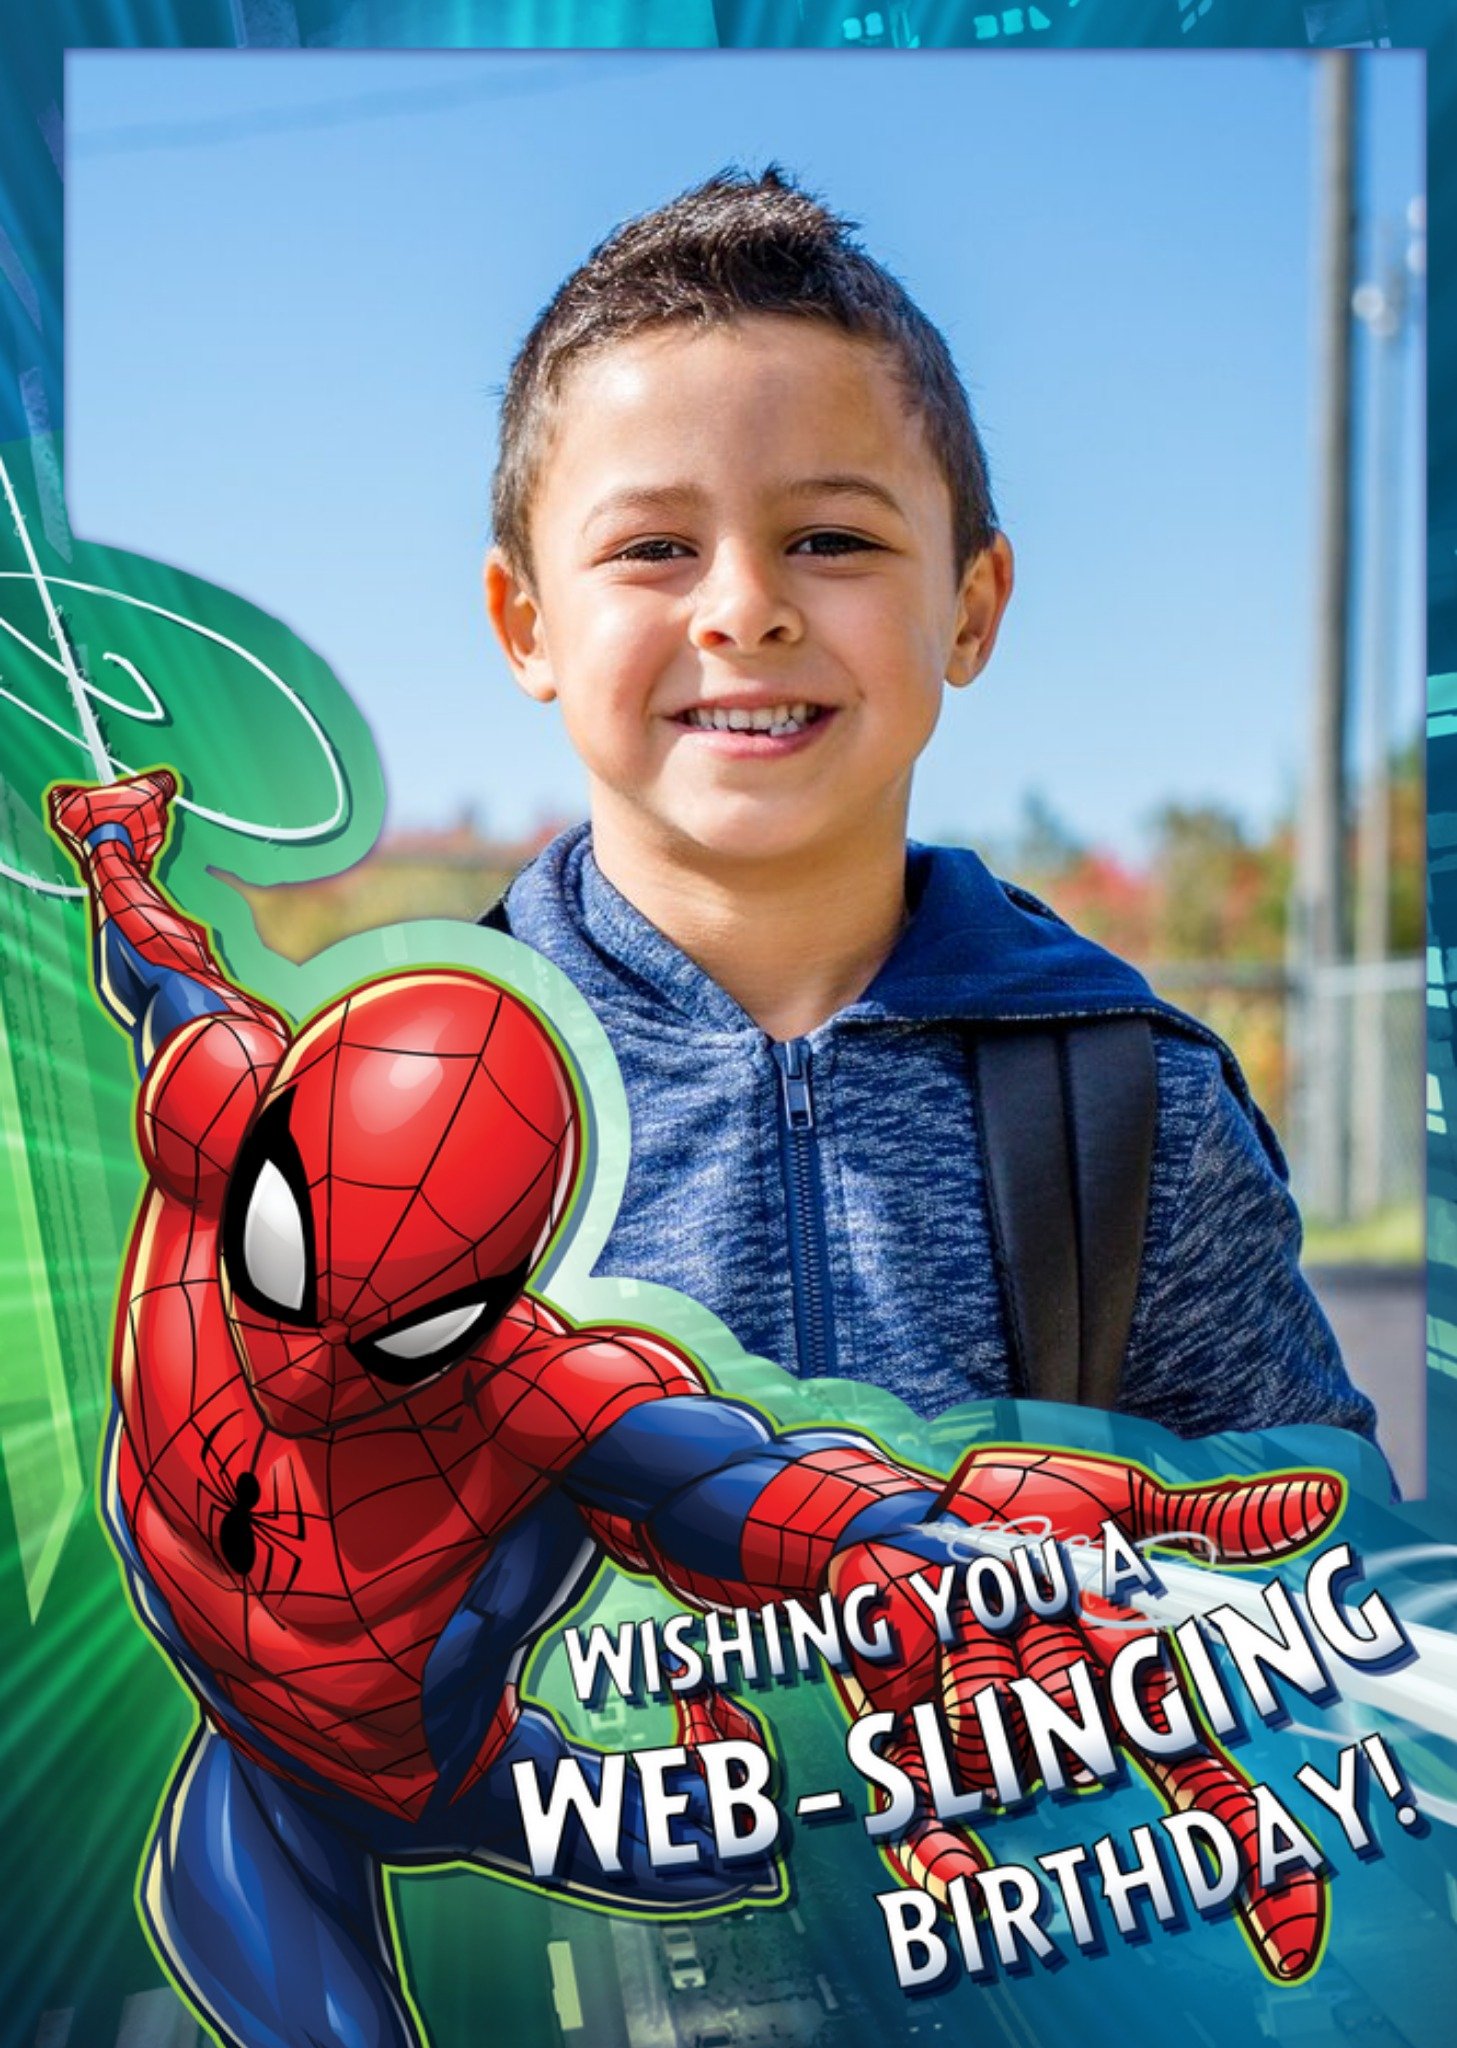 Marvel Spiderman Web-Slinging Photo Upload Birthday Card, Large